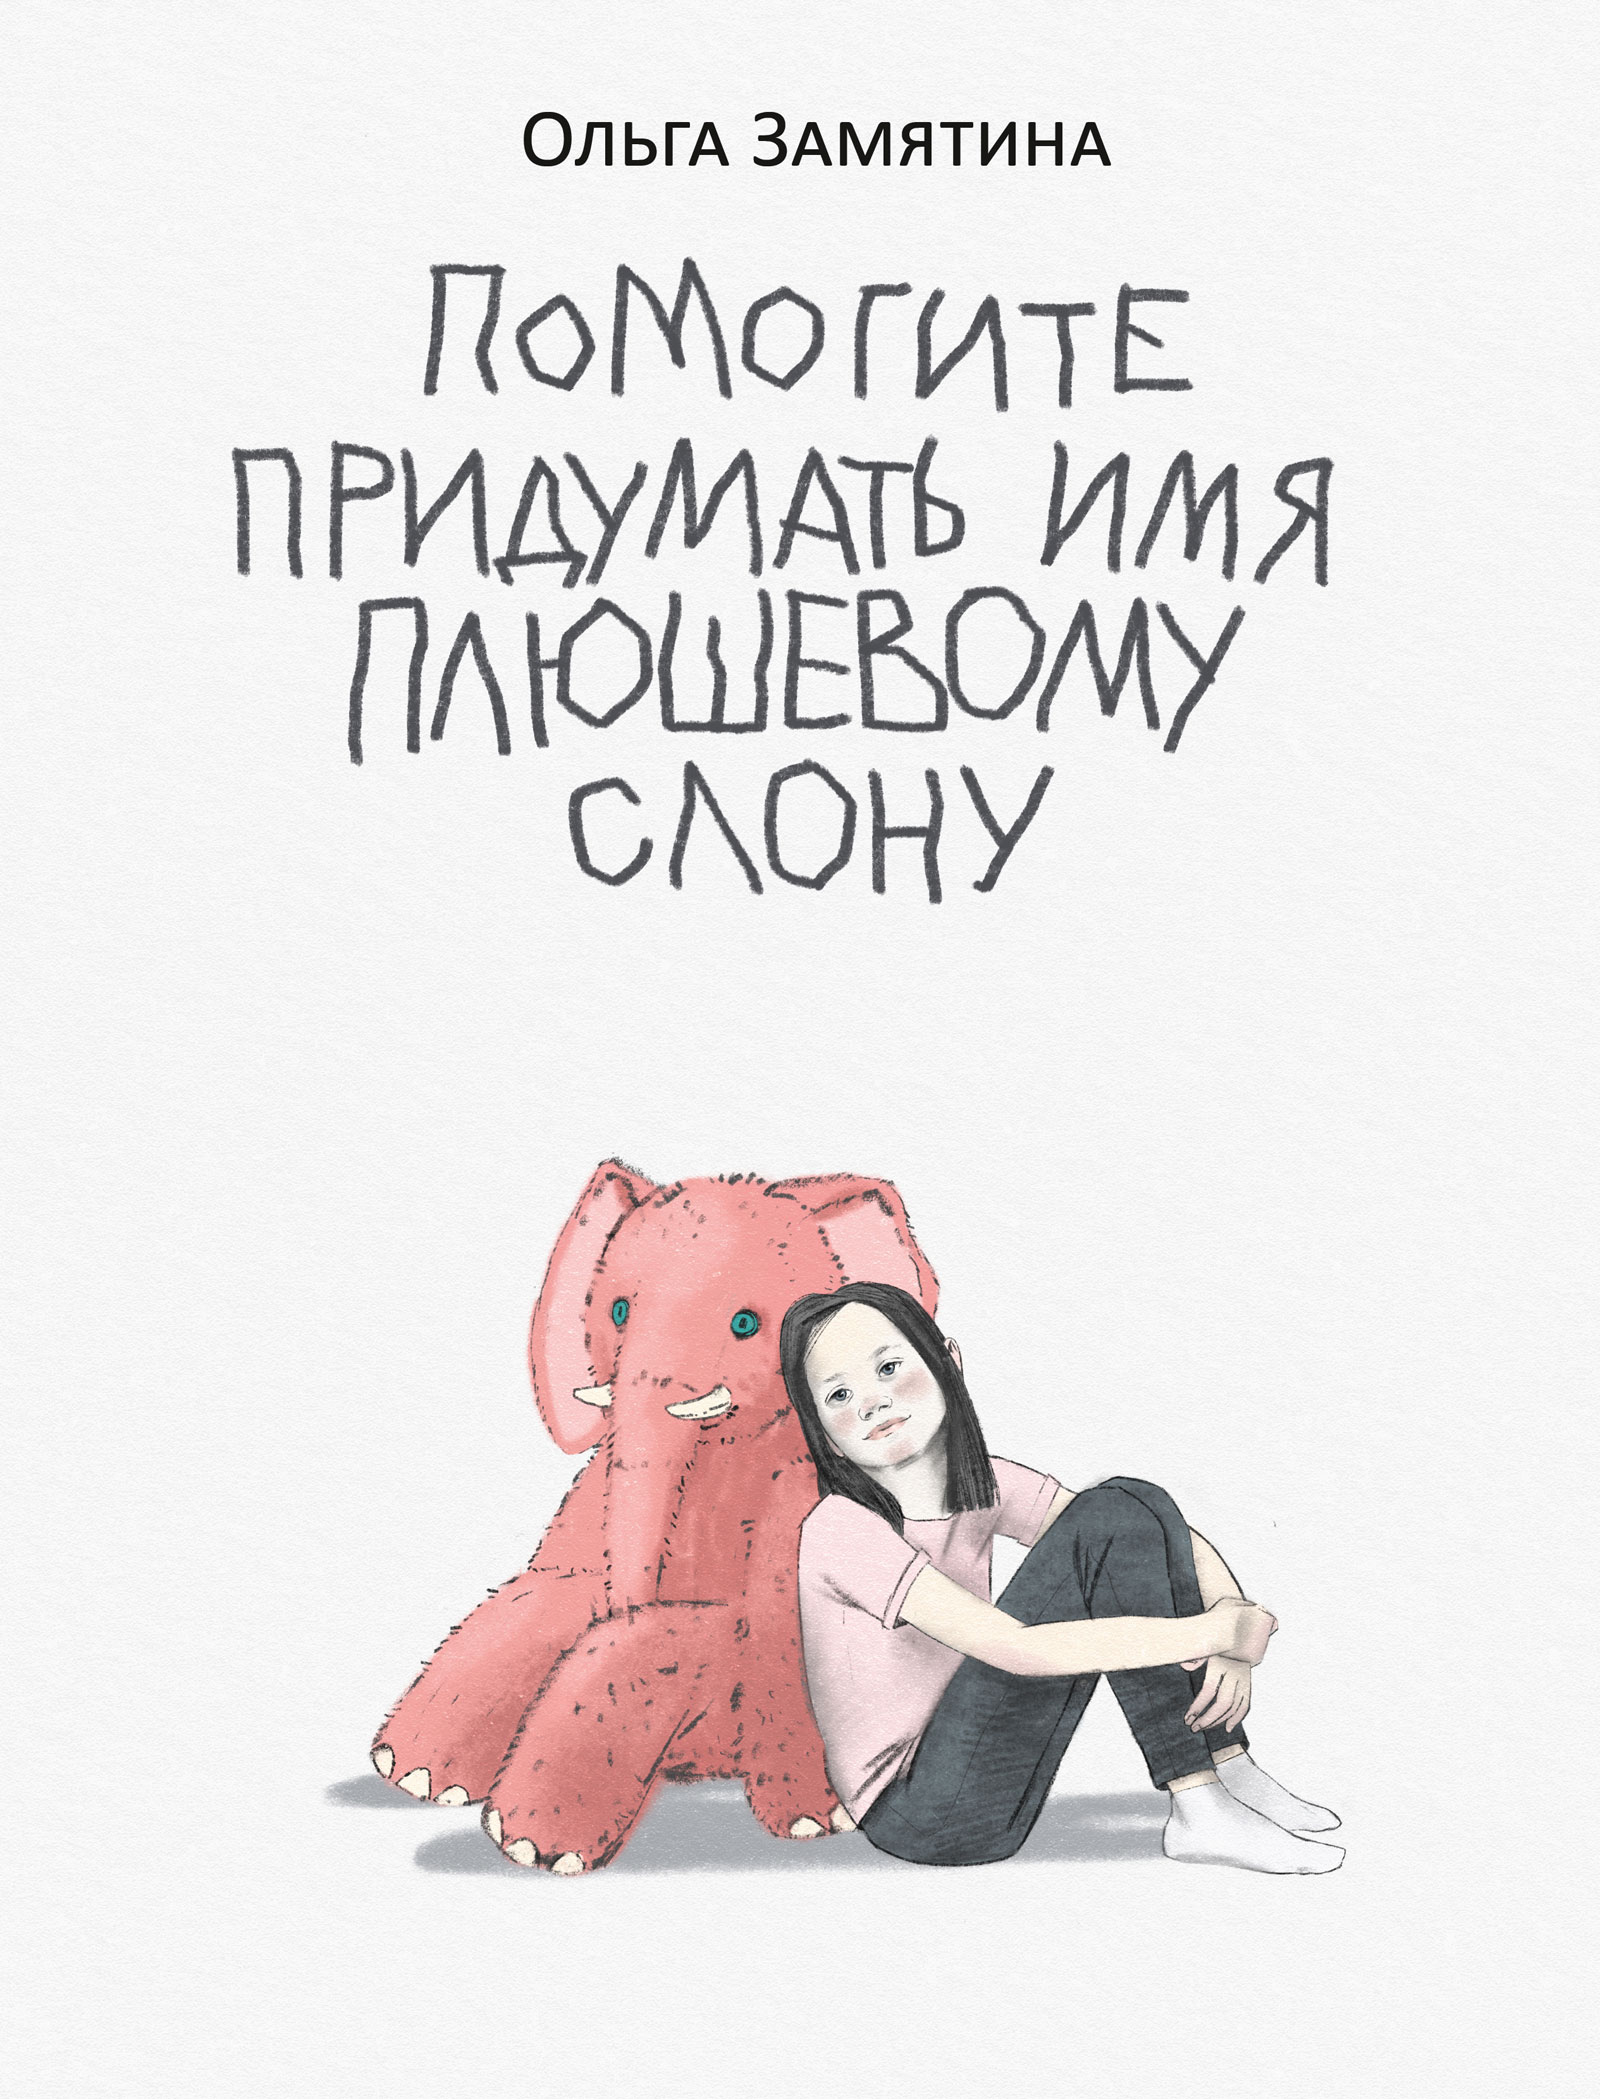 Замятина Ольга Александровна - Помогите придумать имя плюшевому слону: поэма